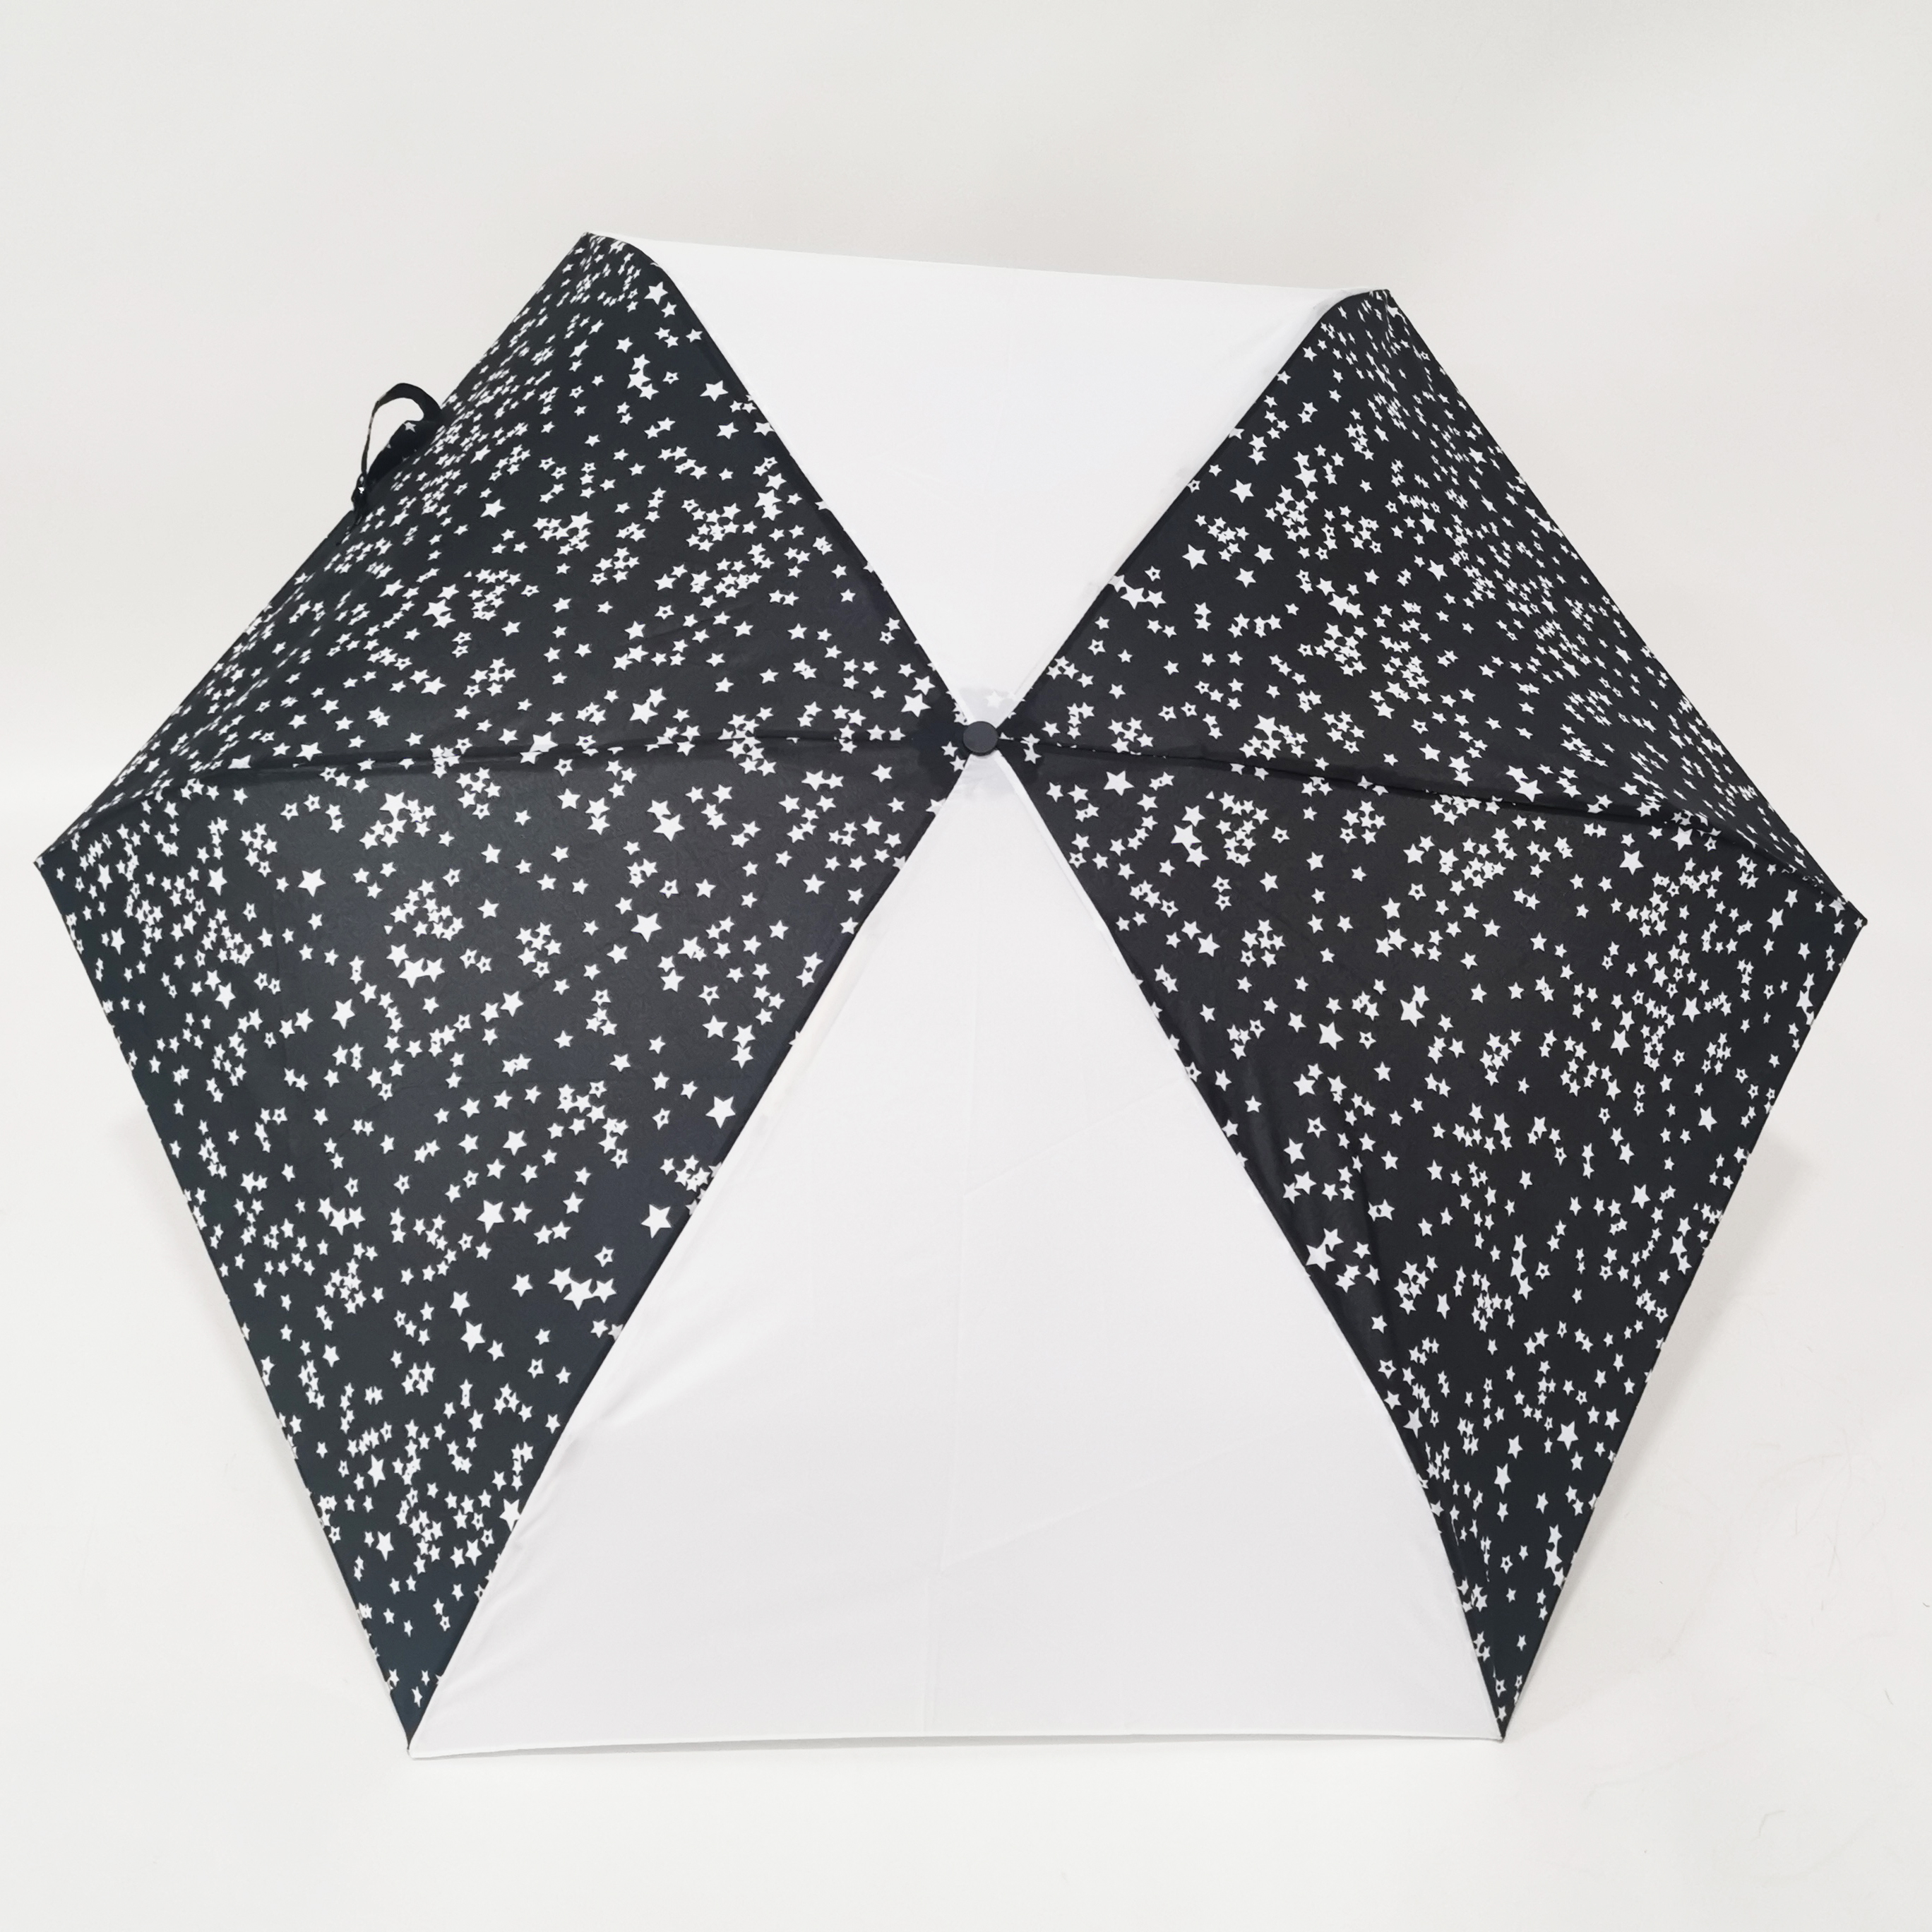 https://www.hodaumbrella.com/just-205g-an-tre-folding-umbrella-product/